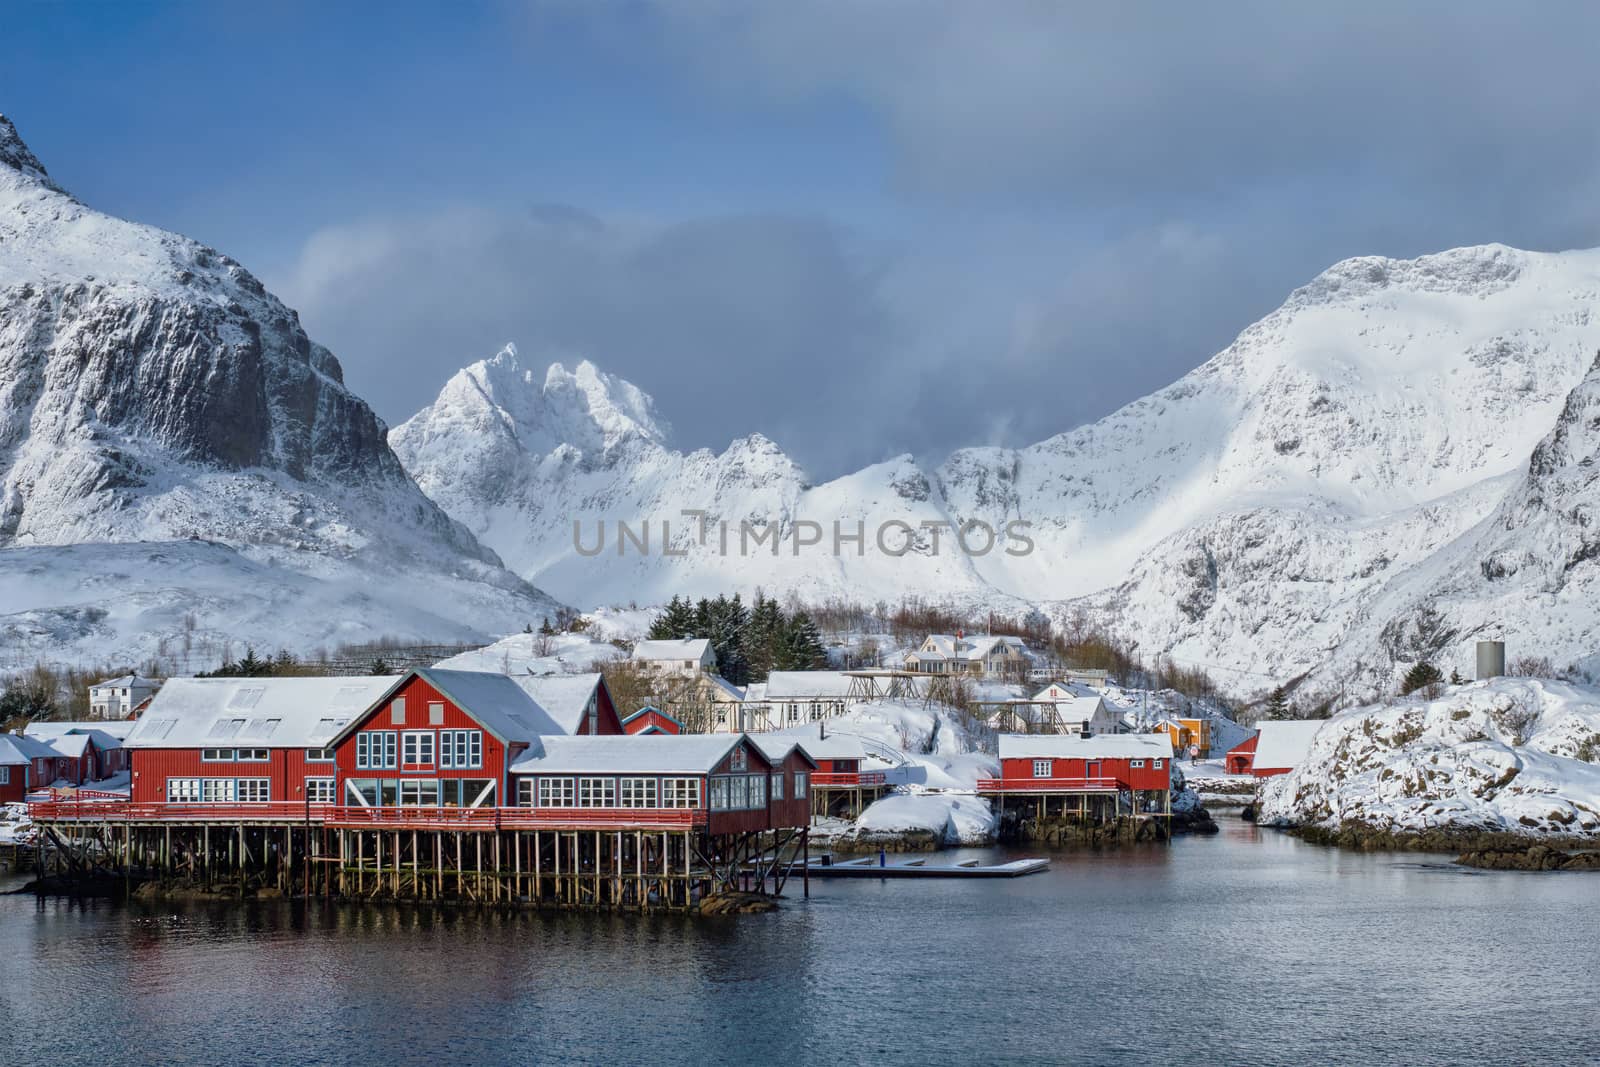 "A" village on Lofoten Islands, Norway by dimol